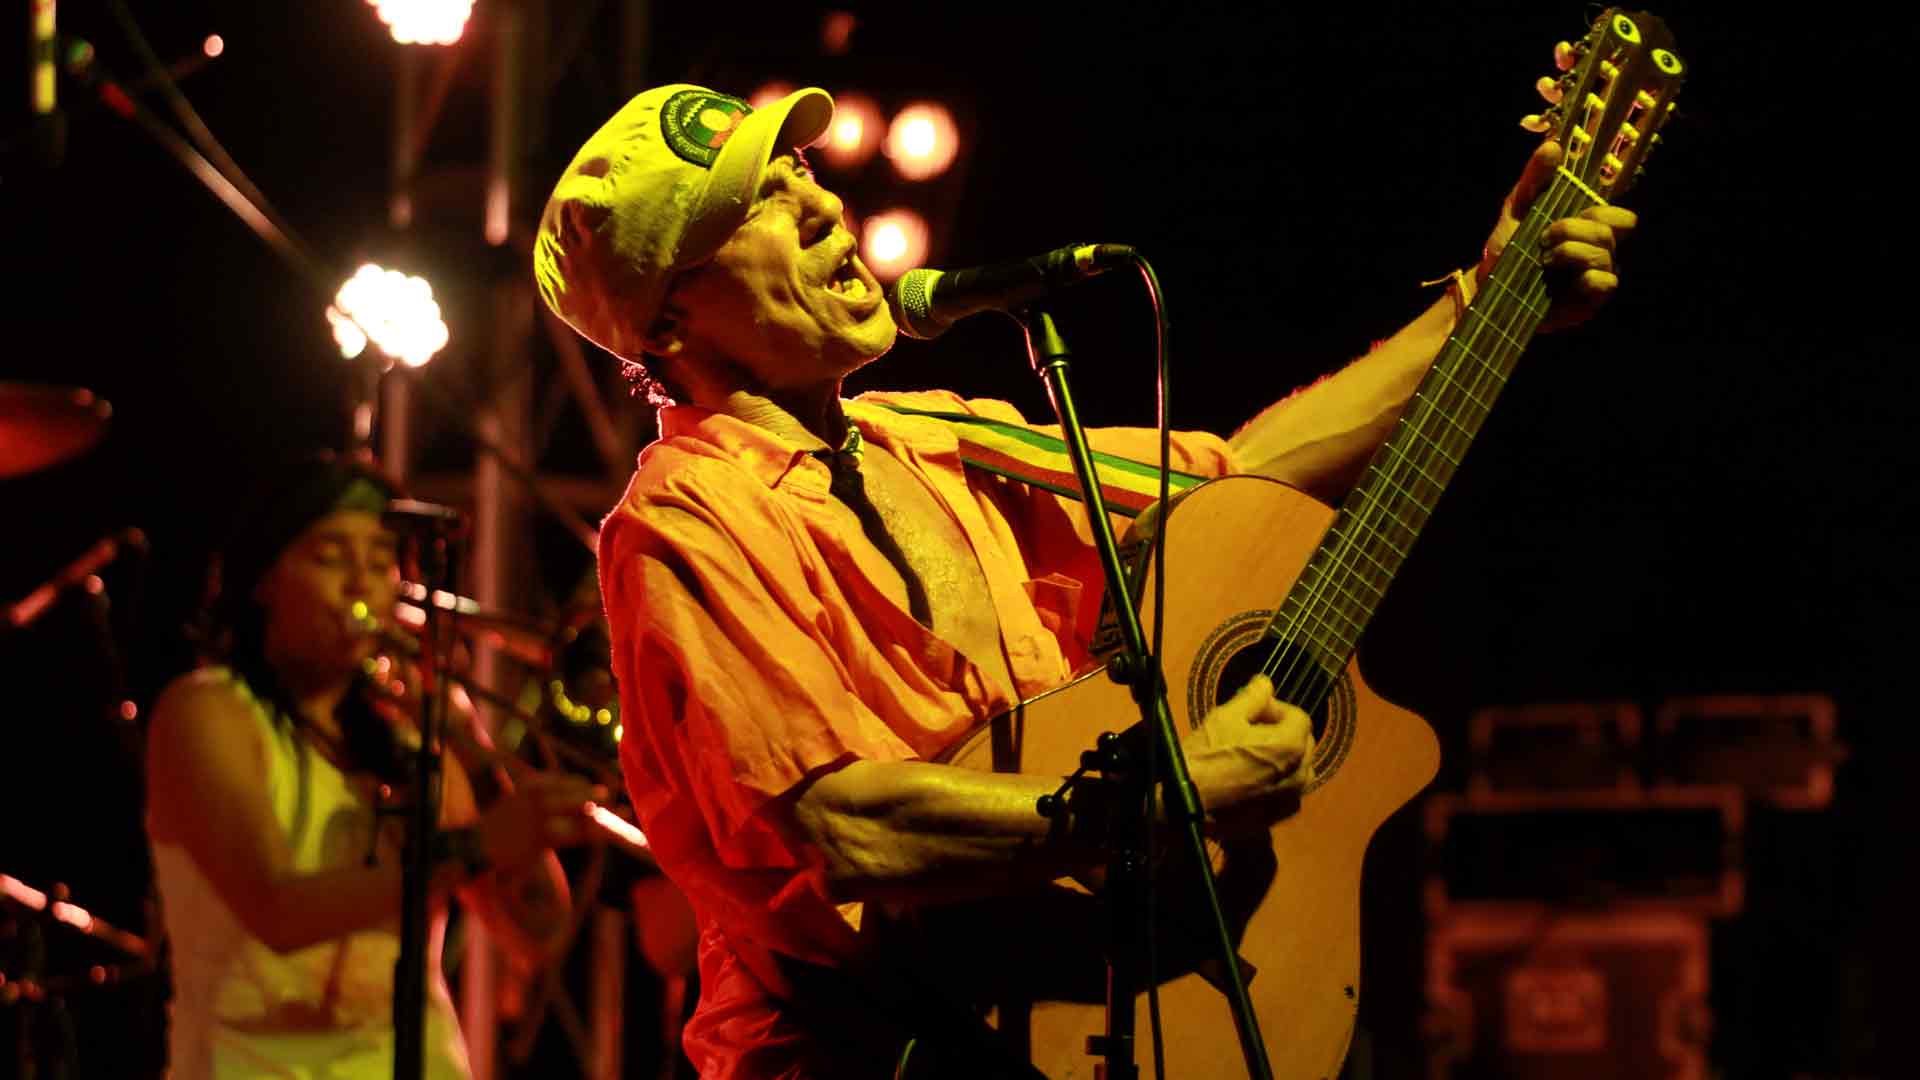 Manu Chao saca tres canciones inéditas de su disco ‘Clandestino’ 21 años después de su lanzamiento